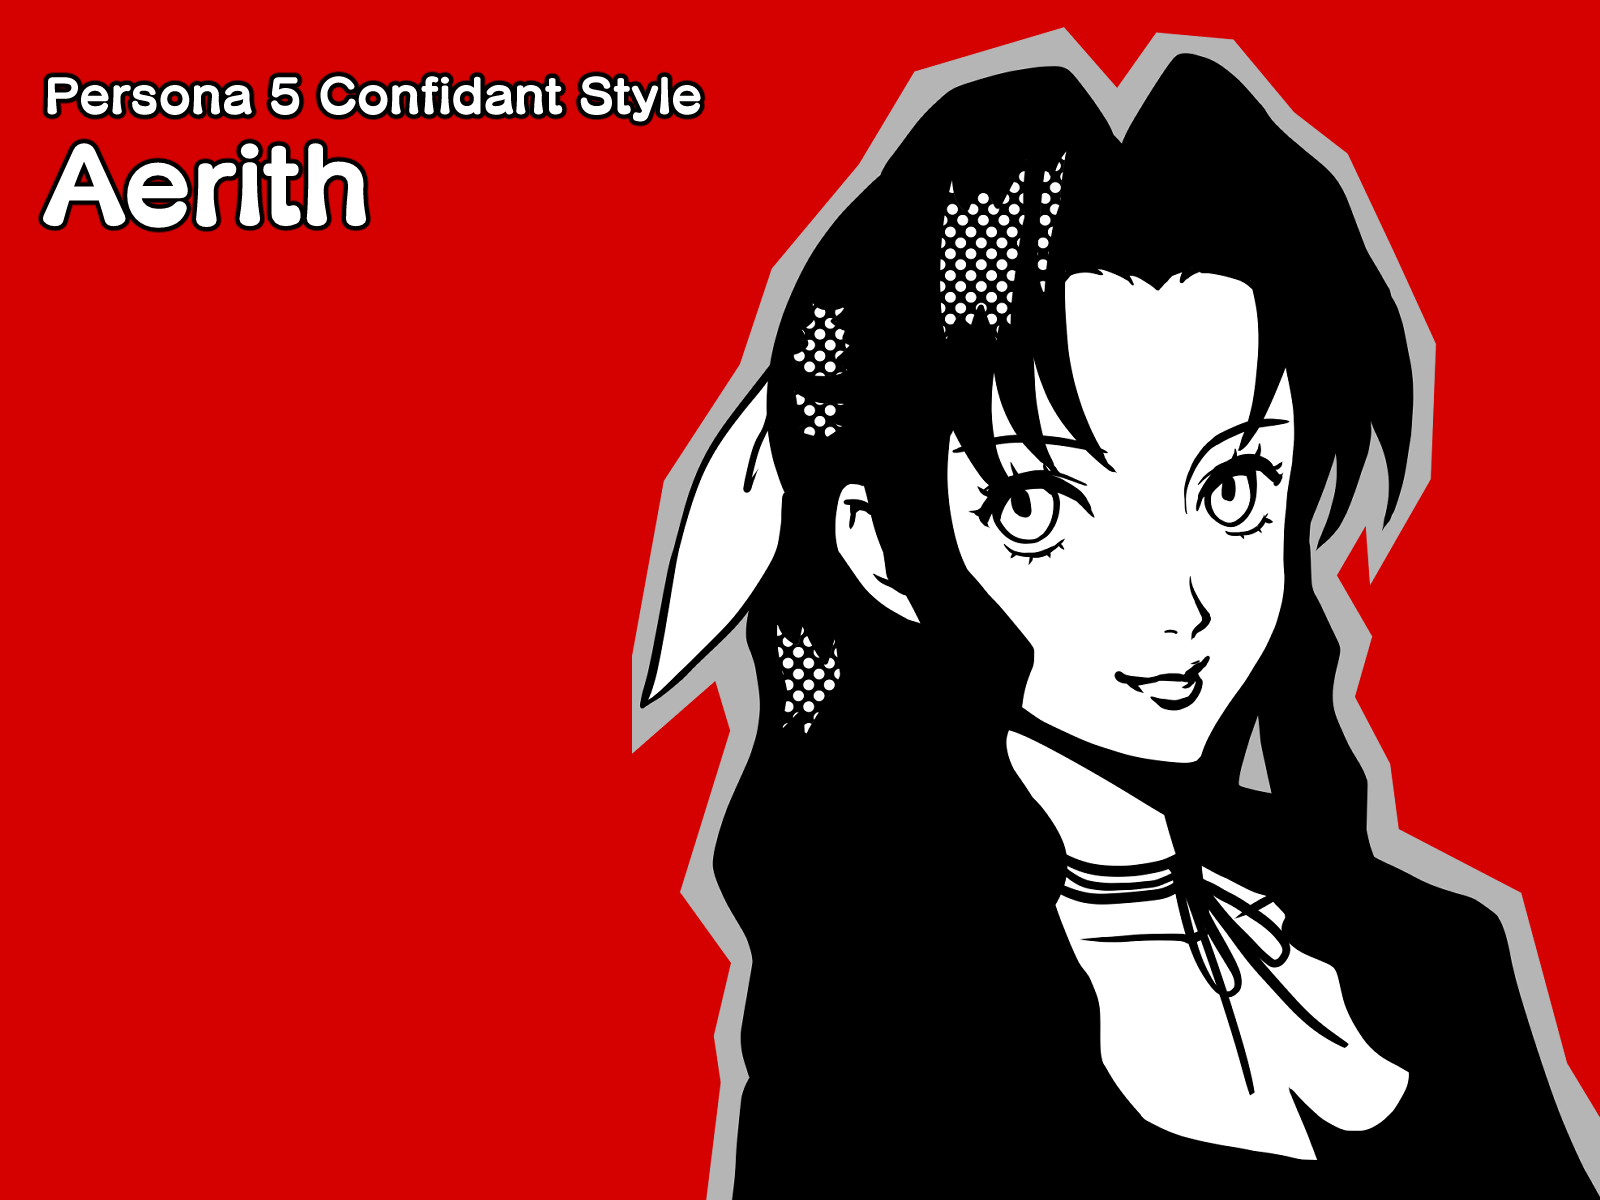 Persona 5 Confidant Style Aerith by Maruki on Dribbble